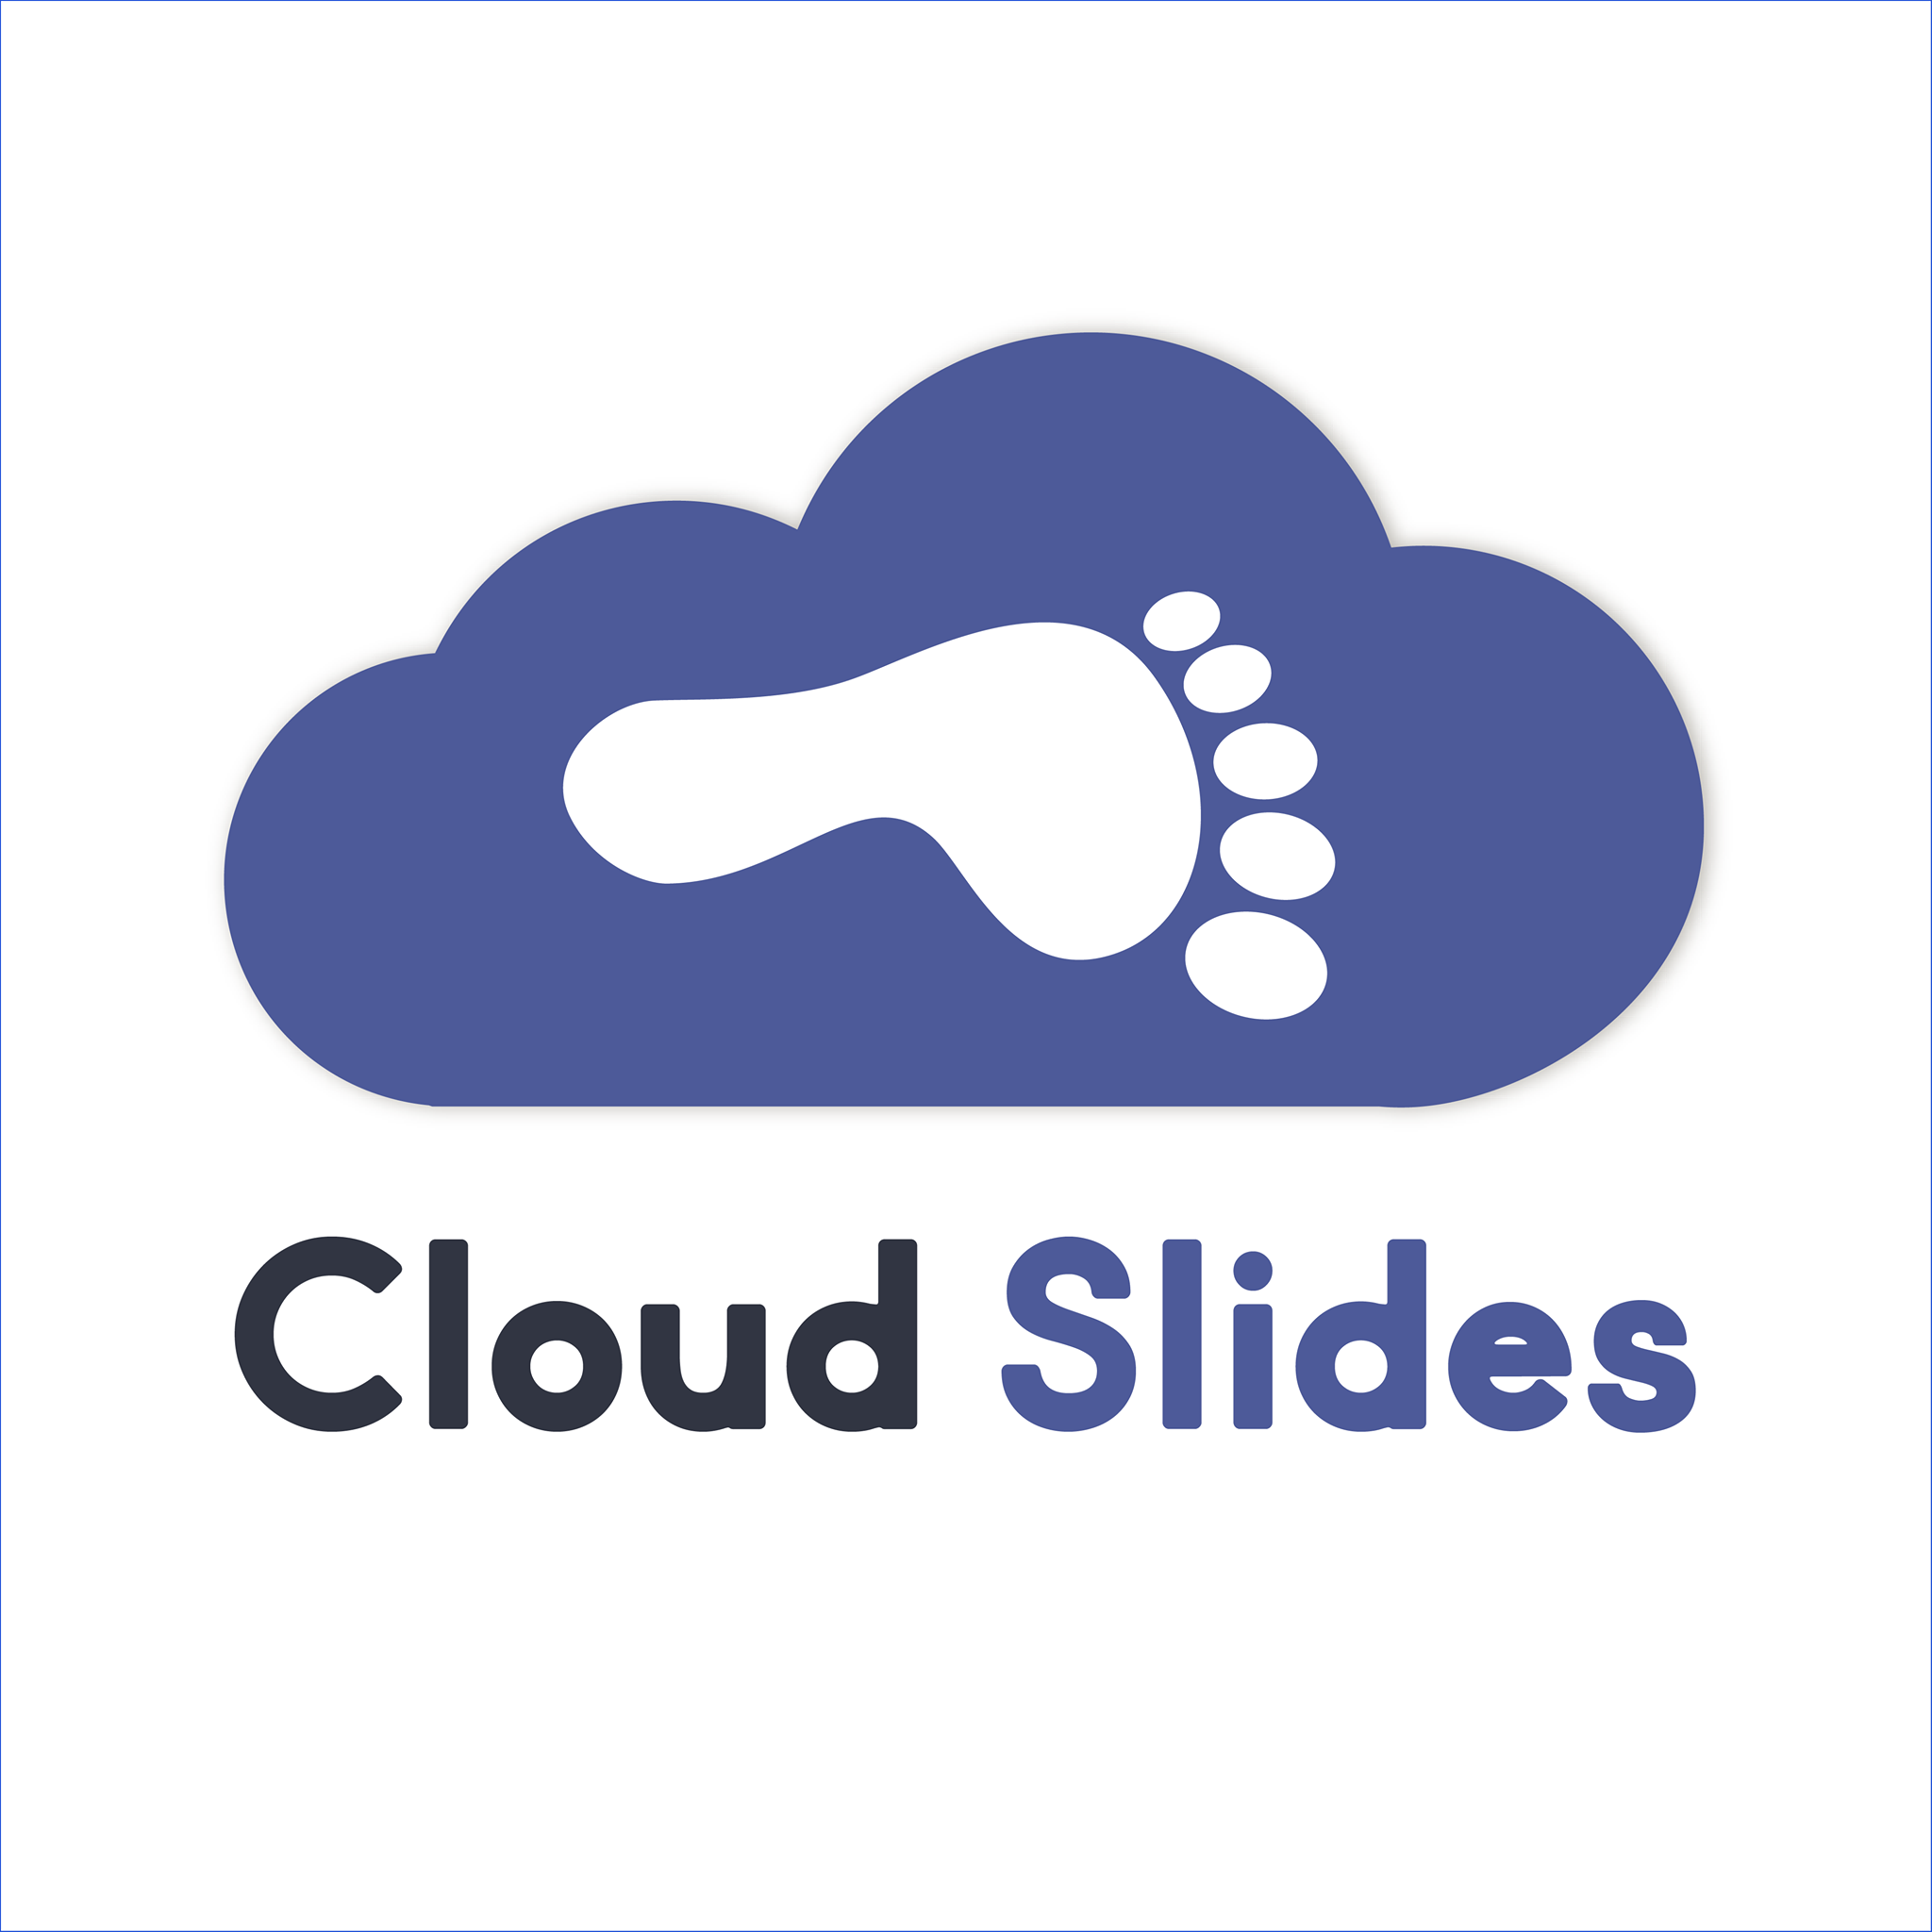 The Cloud Slides